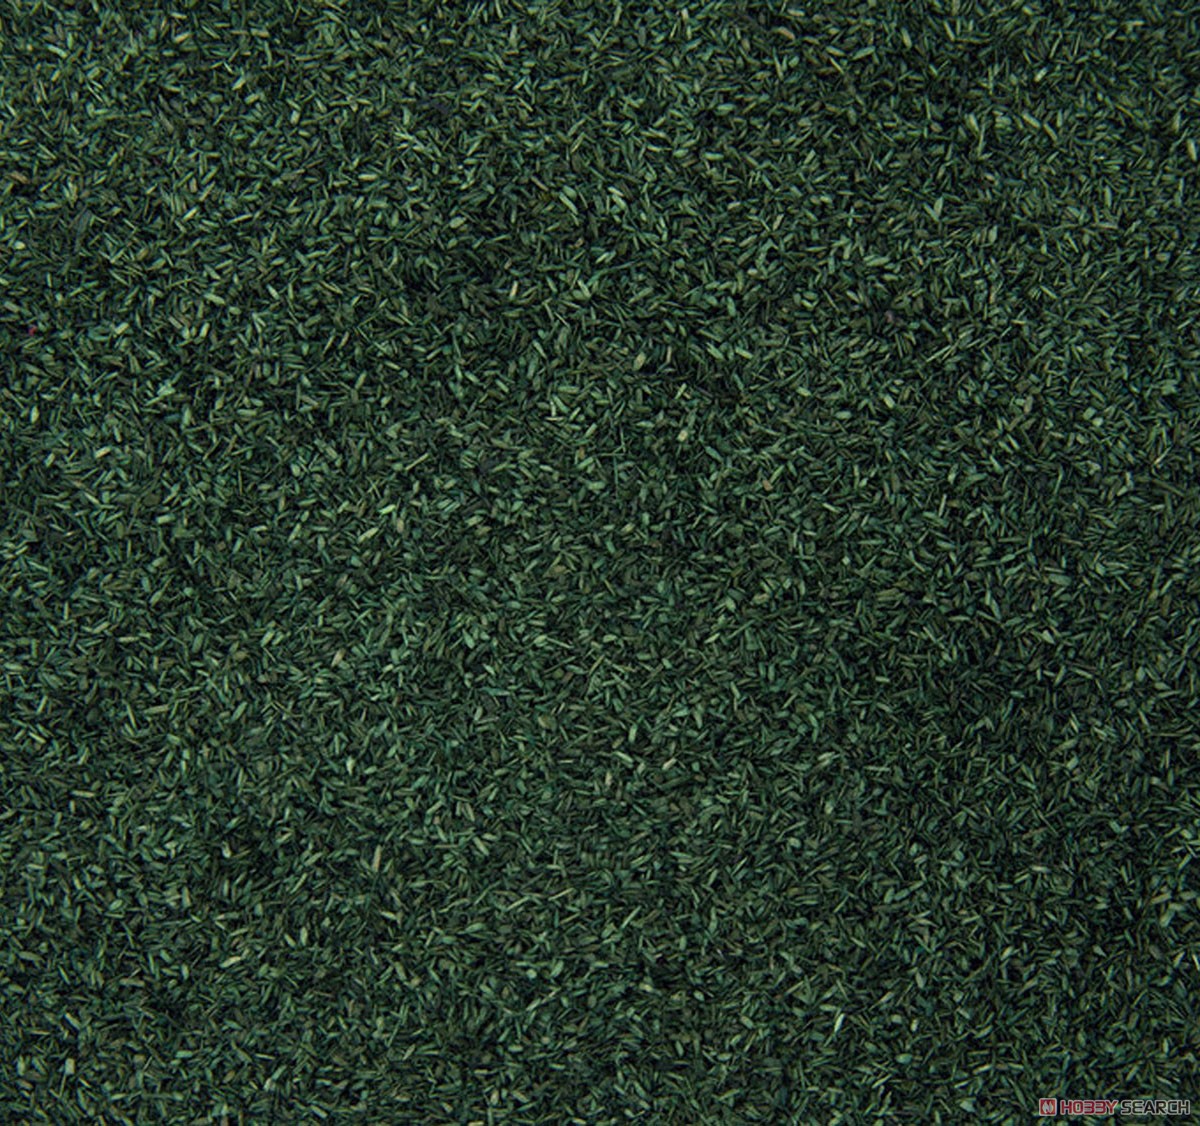 パウダーリーフ短冊形・濃緑 (葉径0.5～1.5mm) (多目的ジオラマ素材シリーズ) (鉄道模型) 商品画像1